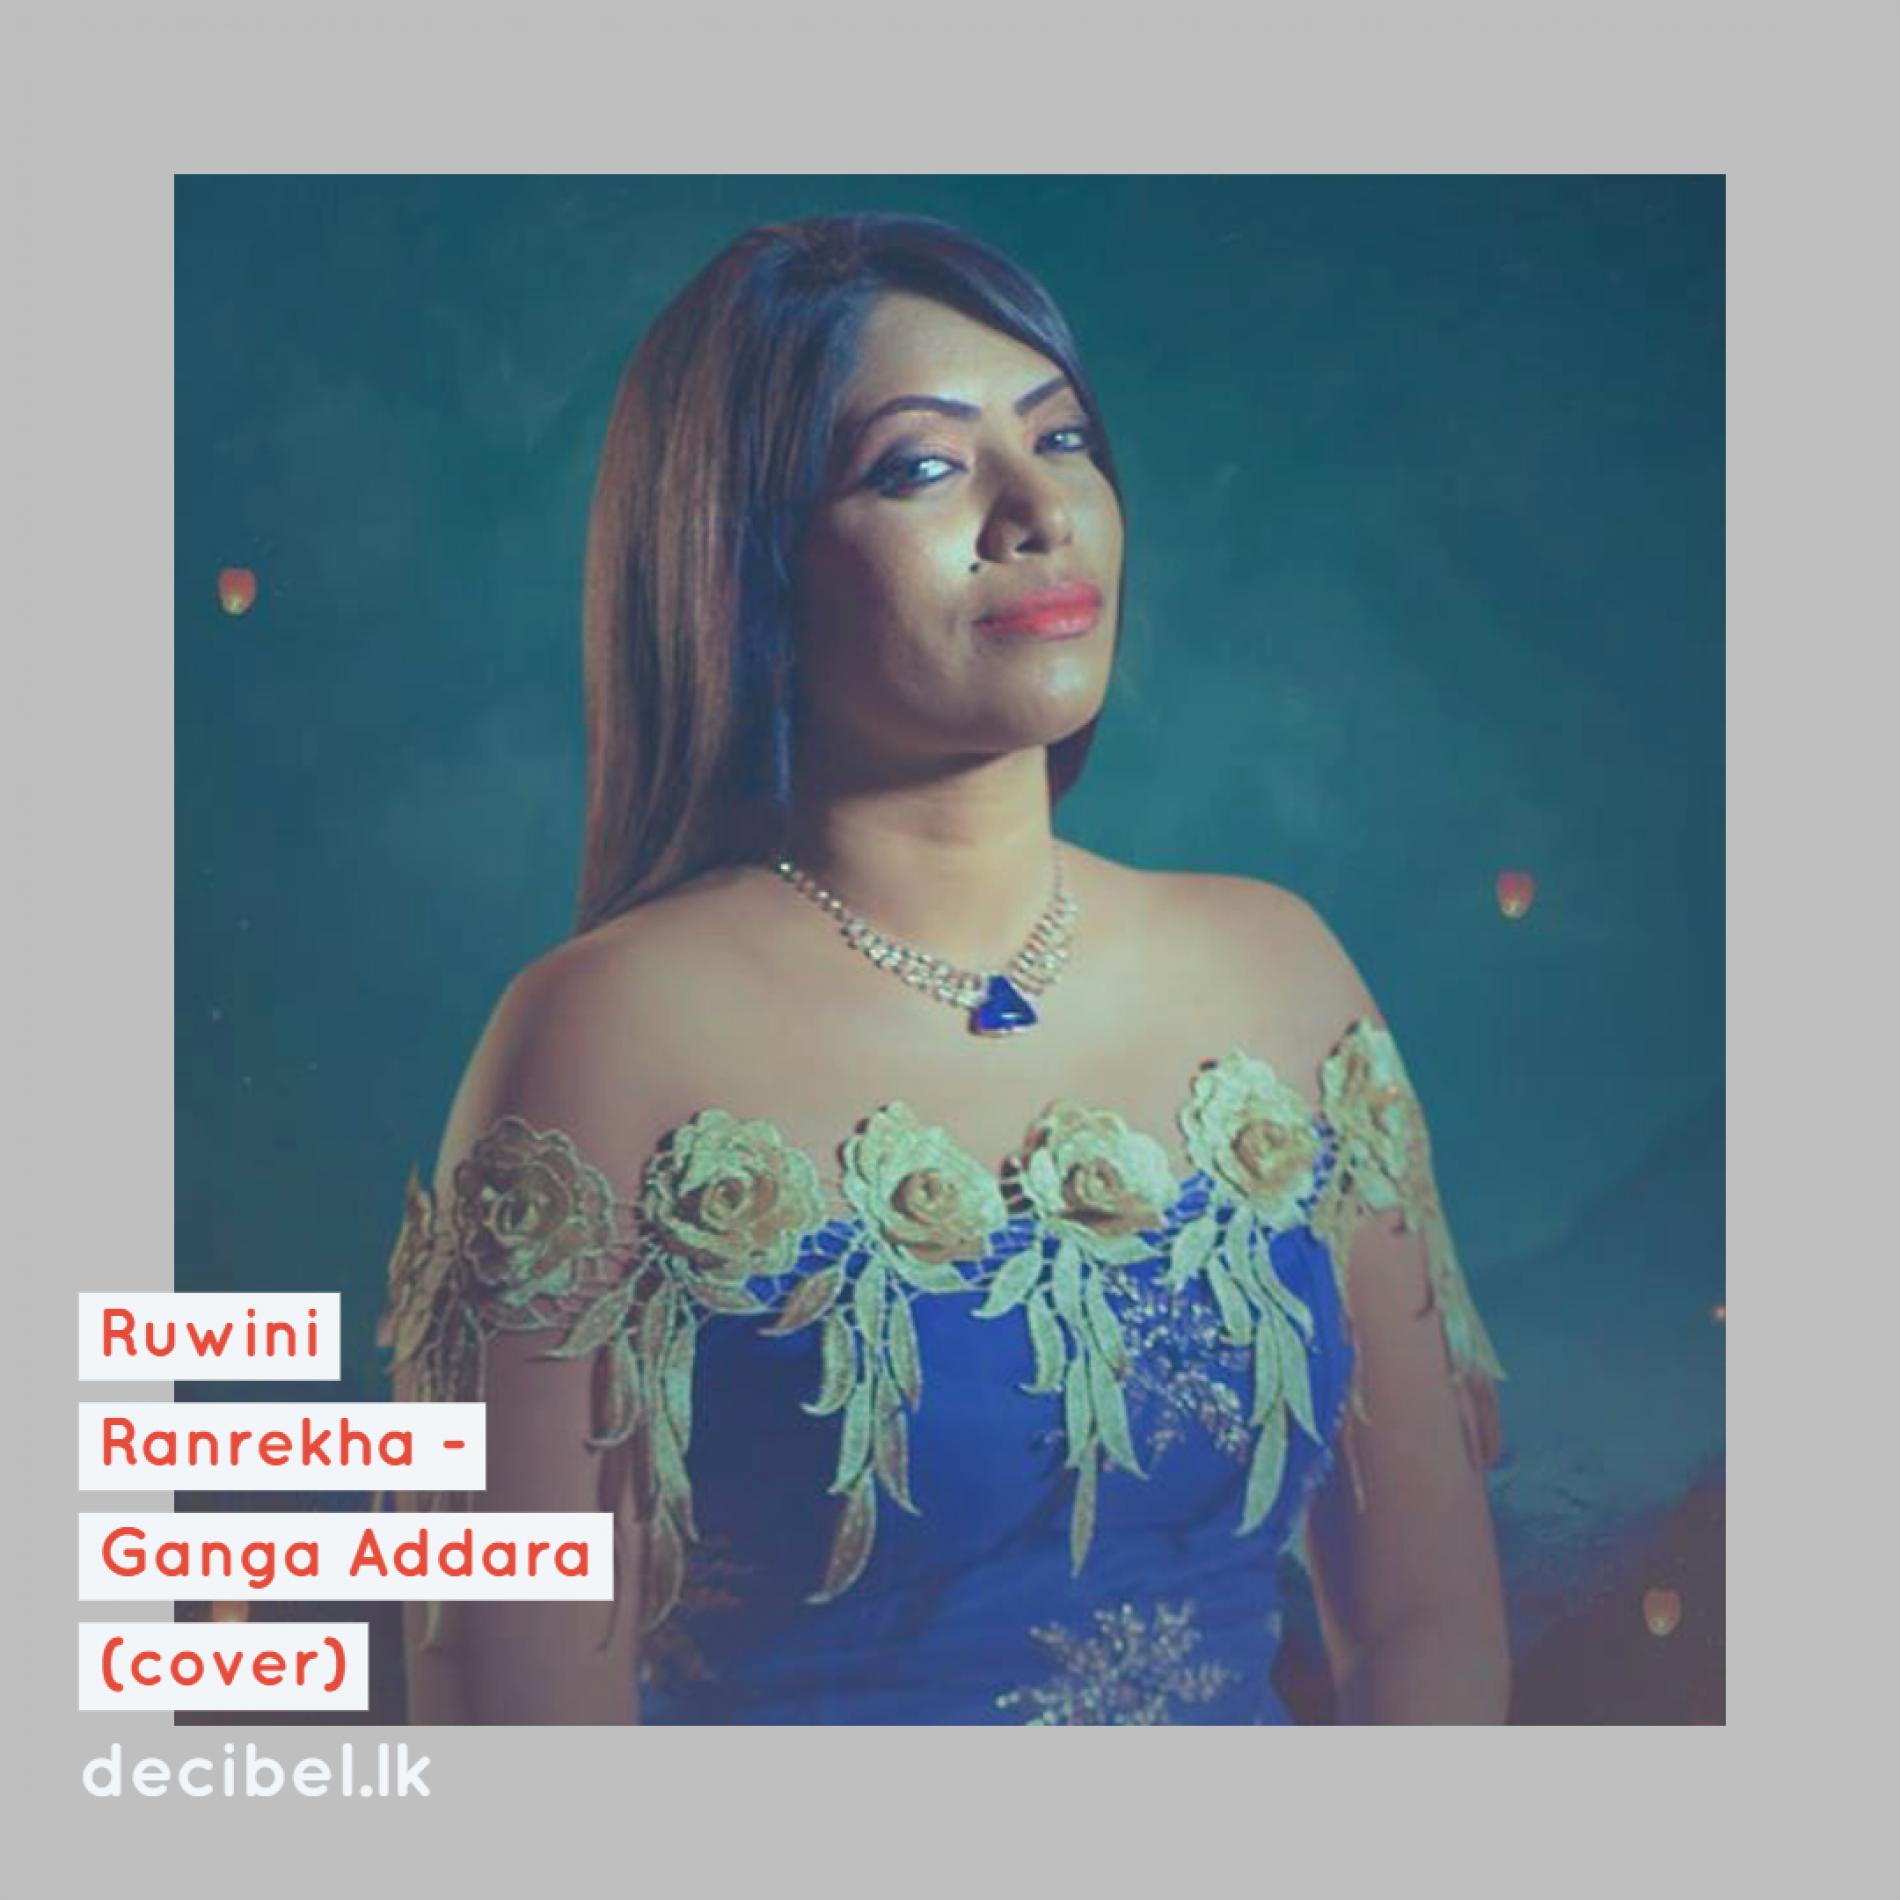 Ruwini Ranrekha – Ganga Addara (Cover)